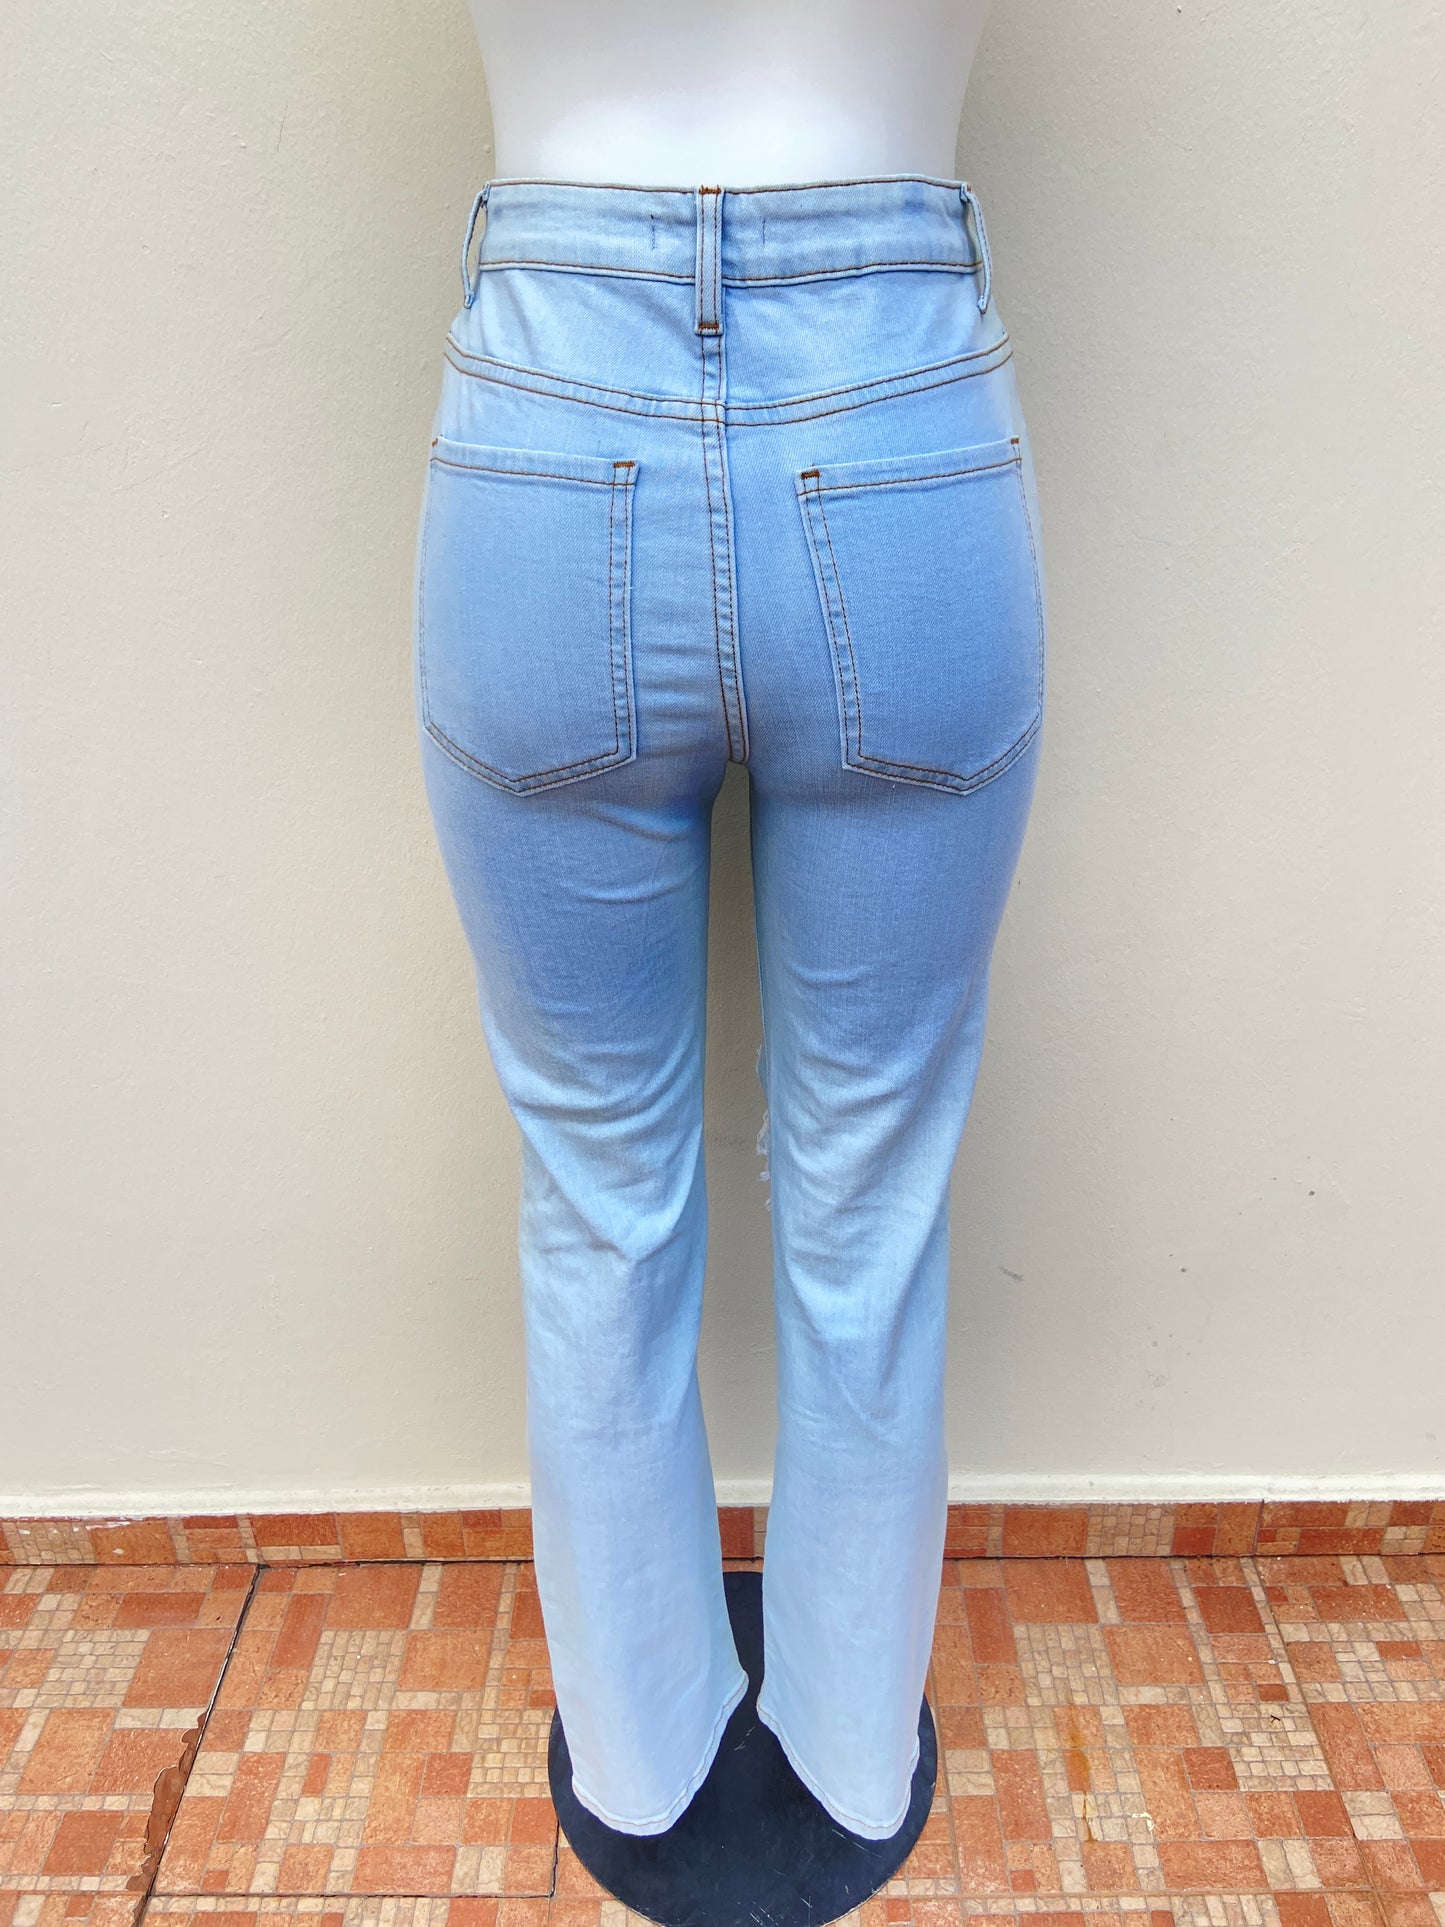 Pantalón Jean Fashion Nova original azul claro con rasgados, campana.